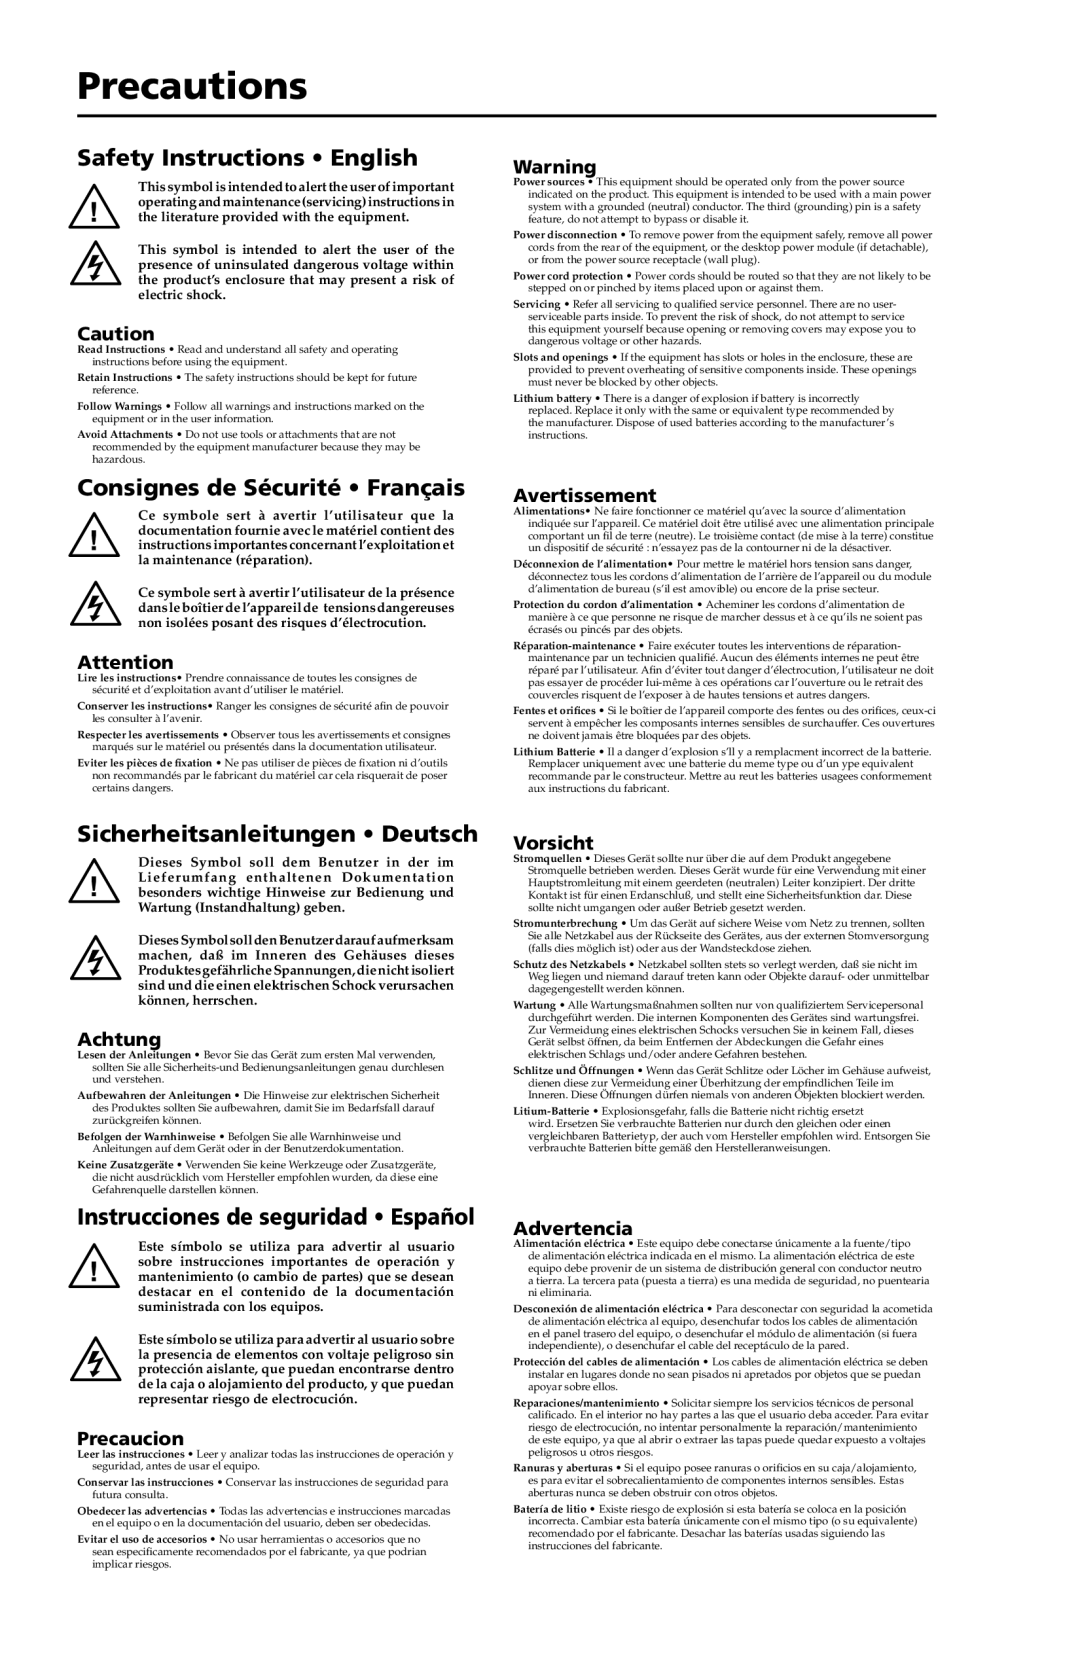 Extron electronic Extender Series Precautions, Safety Instructions English, Consignes de Sécurité Français, Avertissement 